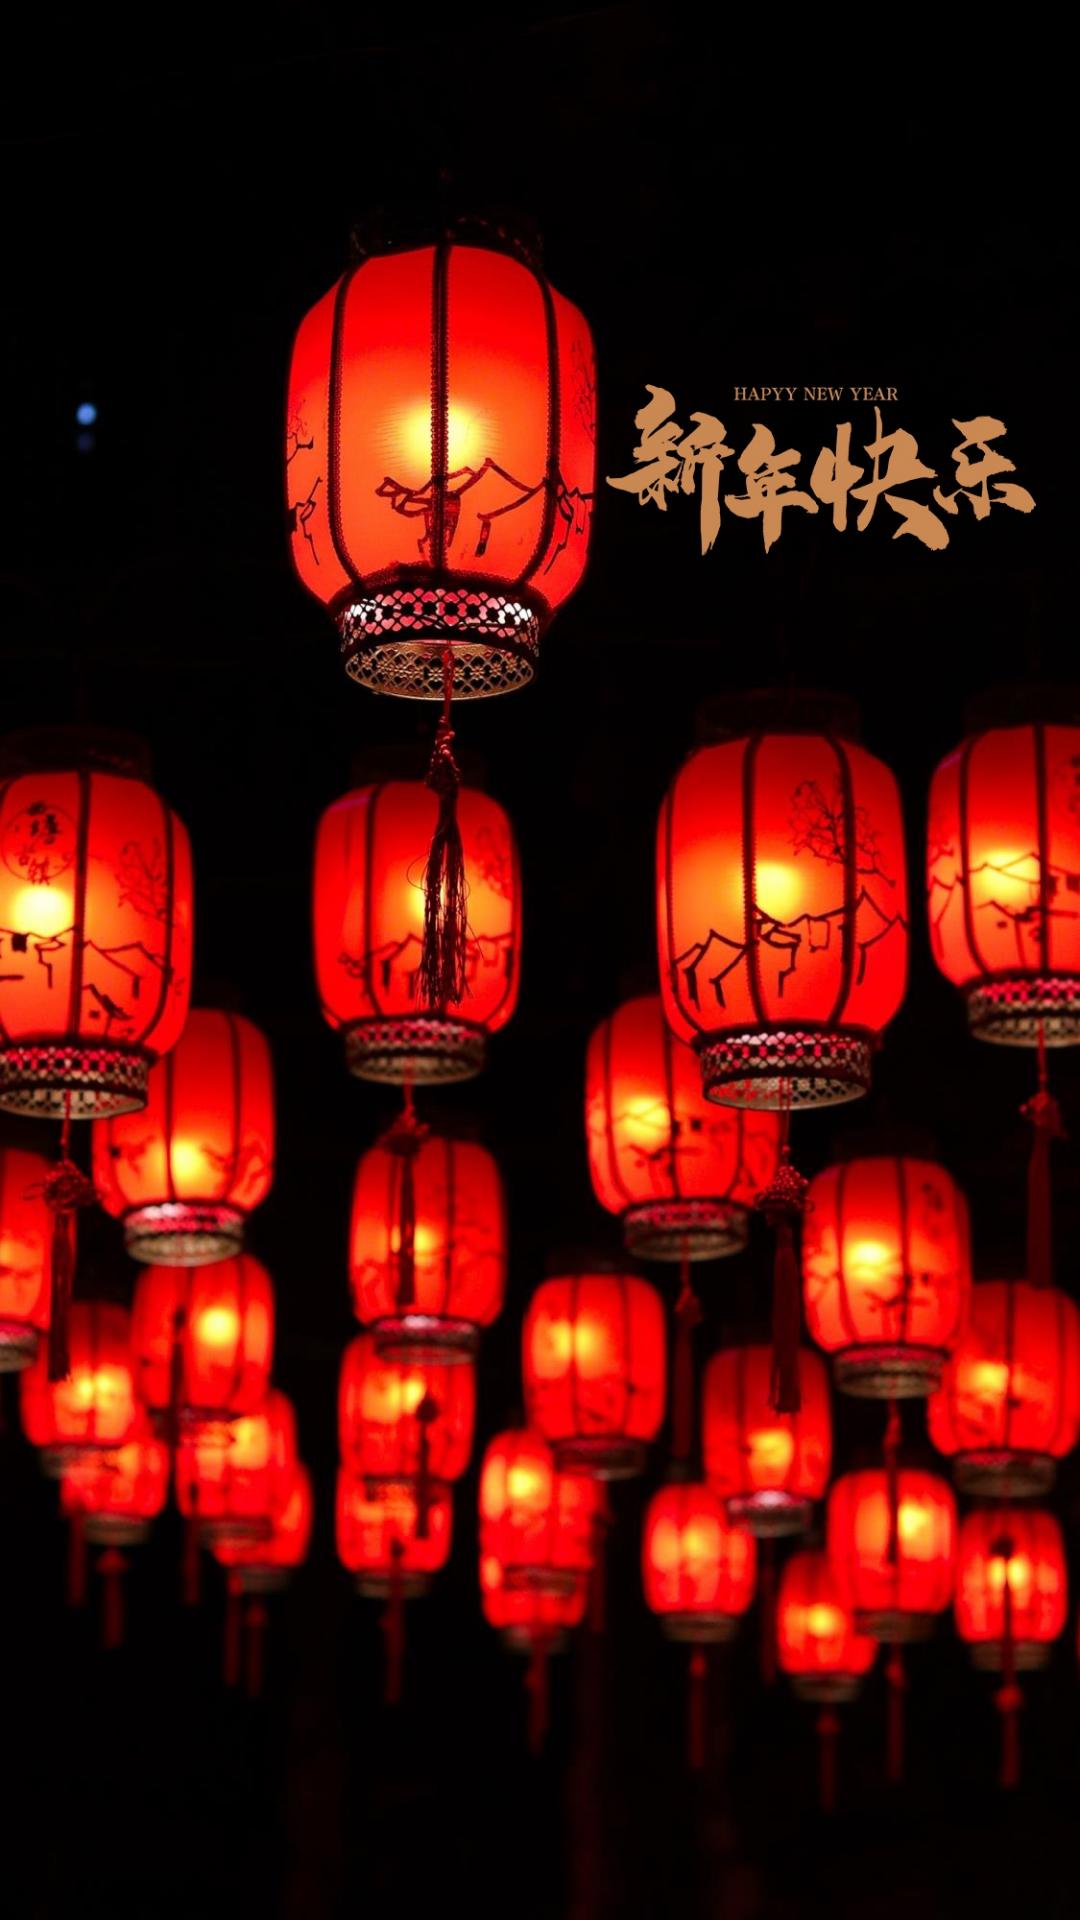 红色 灯笼 中国风 黑色背景 唯美喜庆节日文字手机壁纸图片 新年快乐文字